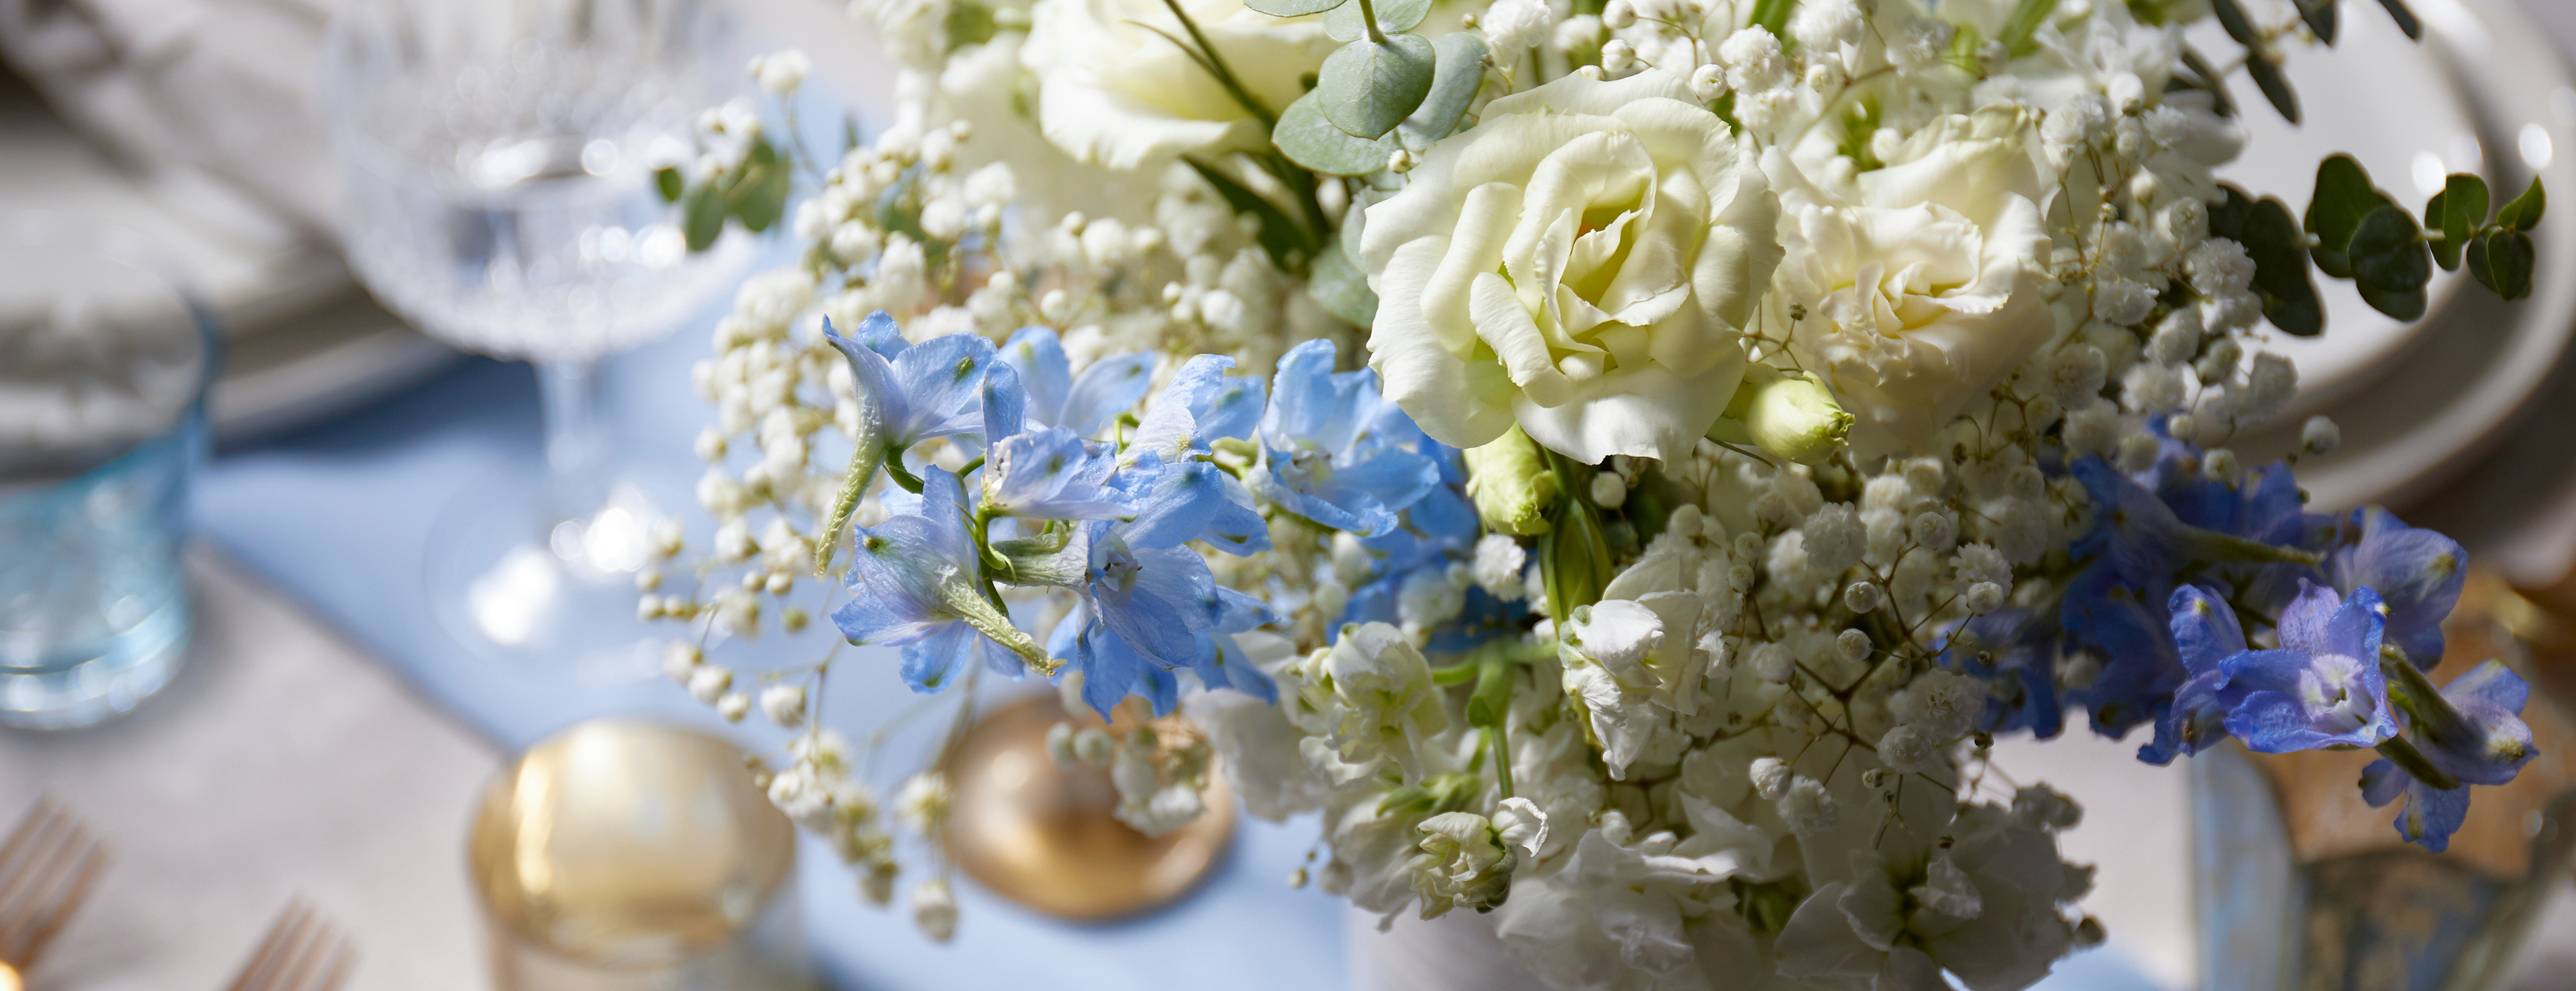 Floral bouquet on set table featuring delphinium flowers